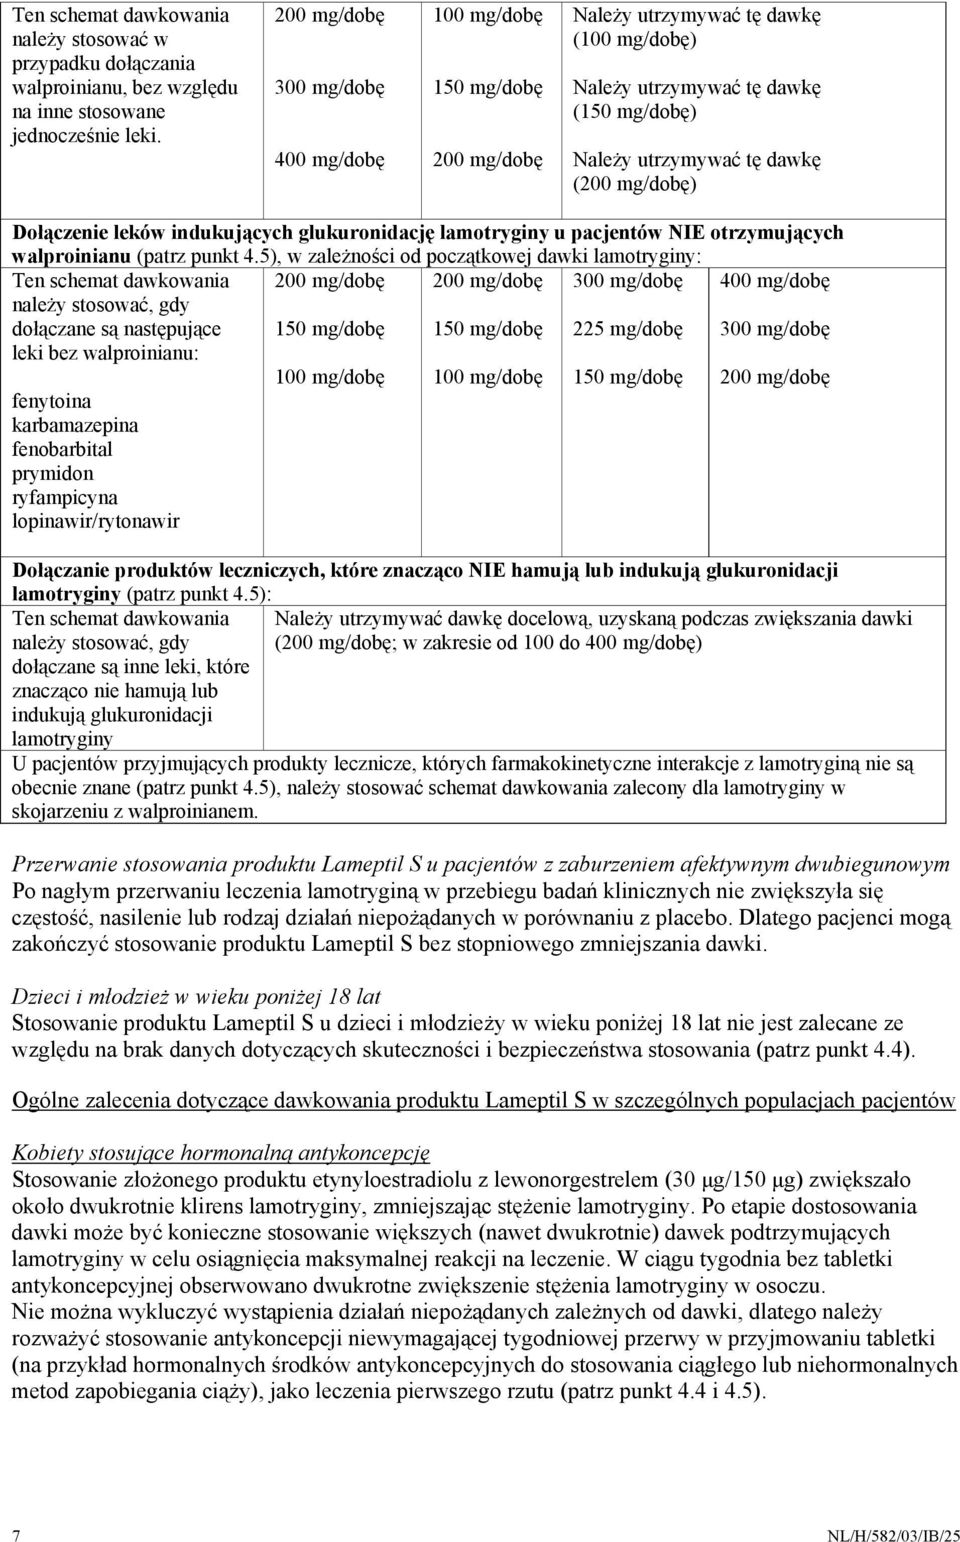 Dołączenie leków indukujących glukuronidację lamotryginy u pacjentów NIE otrzymujących walproinianu (patrz punkt 4.